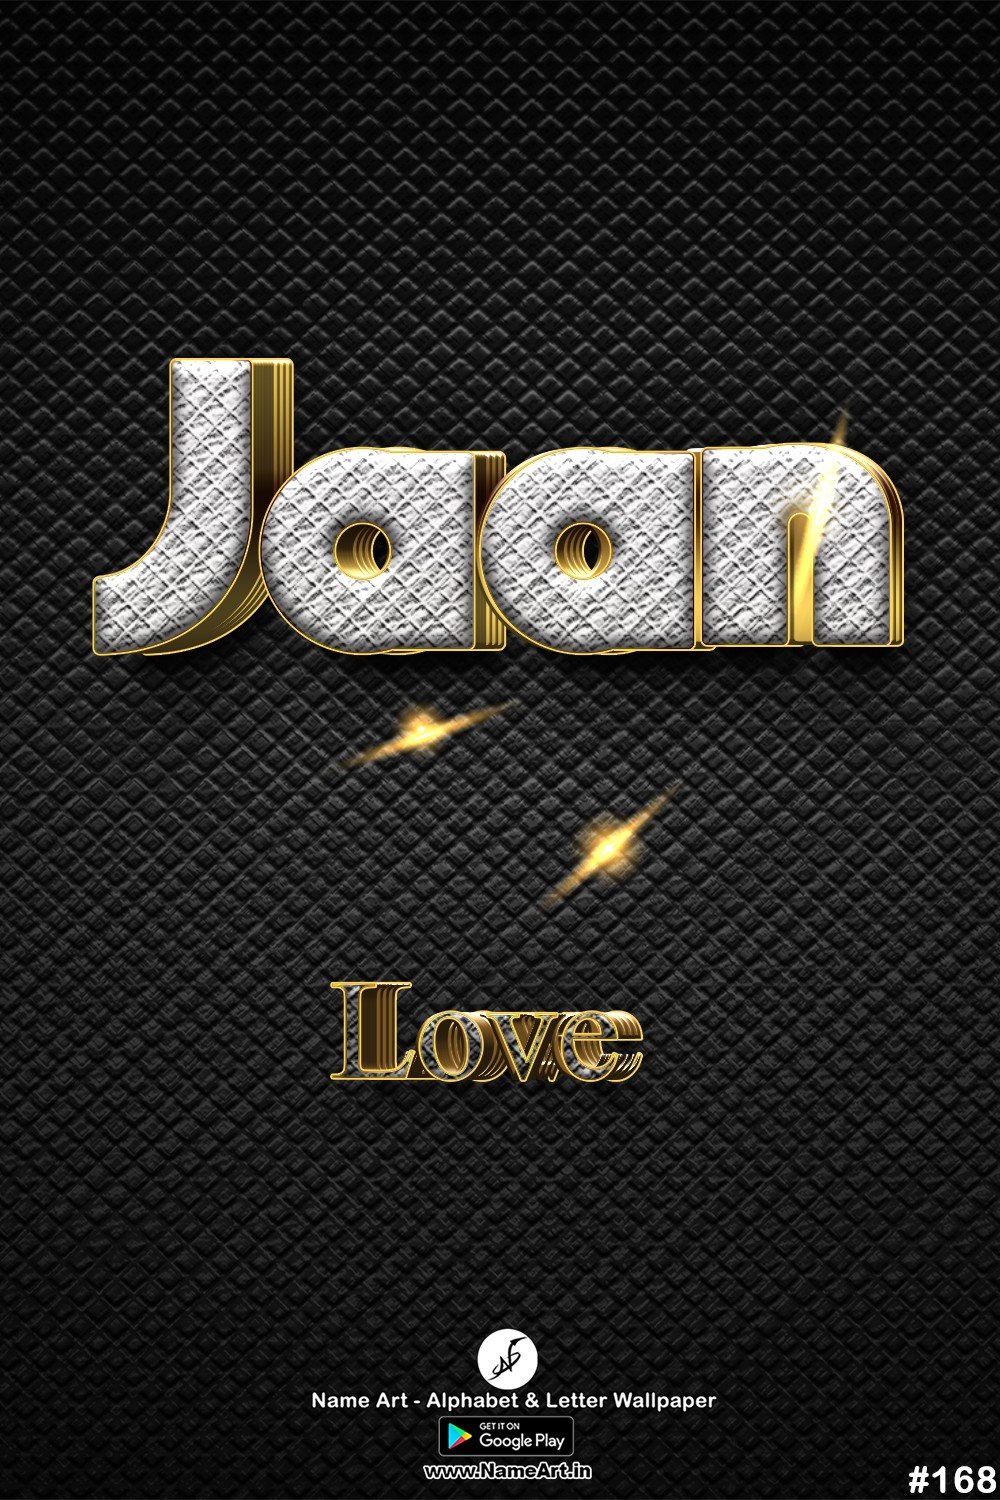 Jaan | Whatsapp Status Jaan | Happy Birthday Jaan !! | New Whatsapp Status Jaan Images |